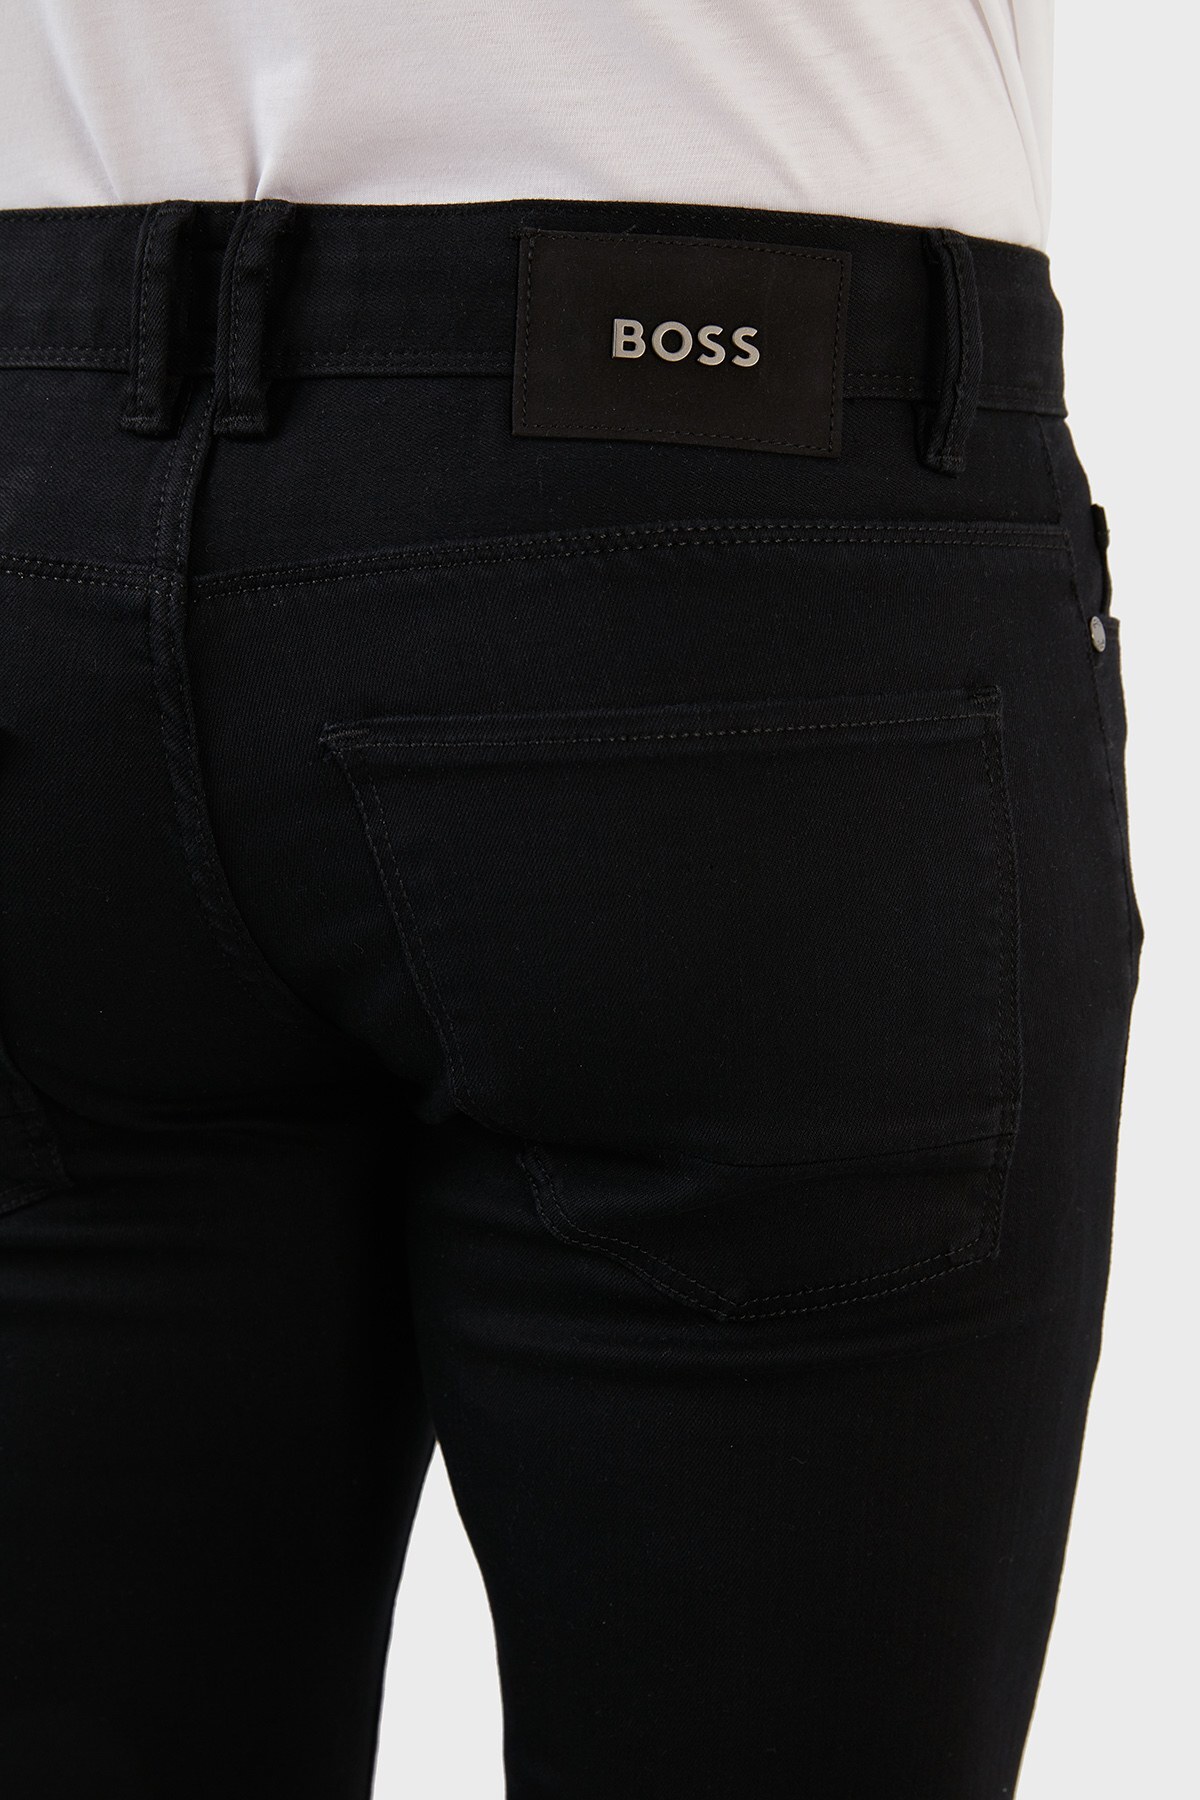 Boss Pamuklu Normal Bel Slim Fit Jeans Erkek Kot Pantolon 50467694 002 SİYAH